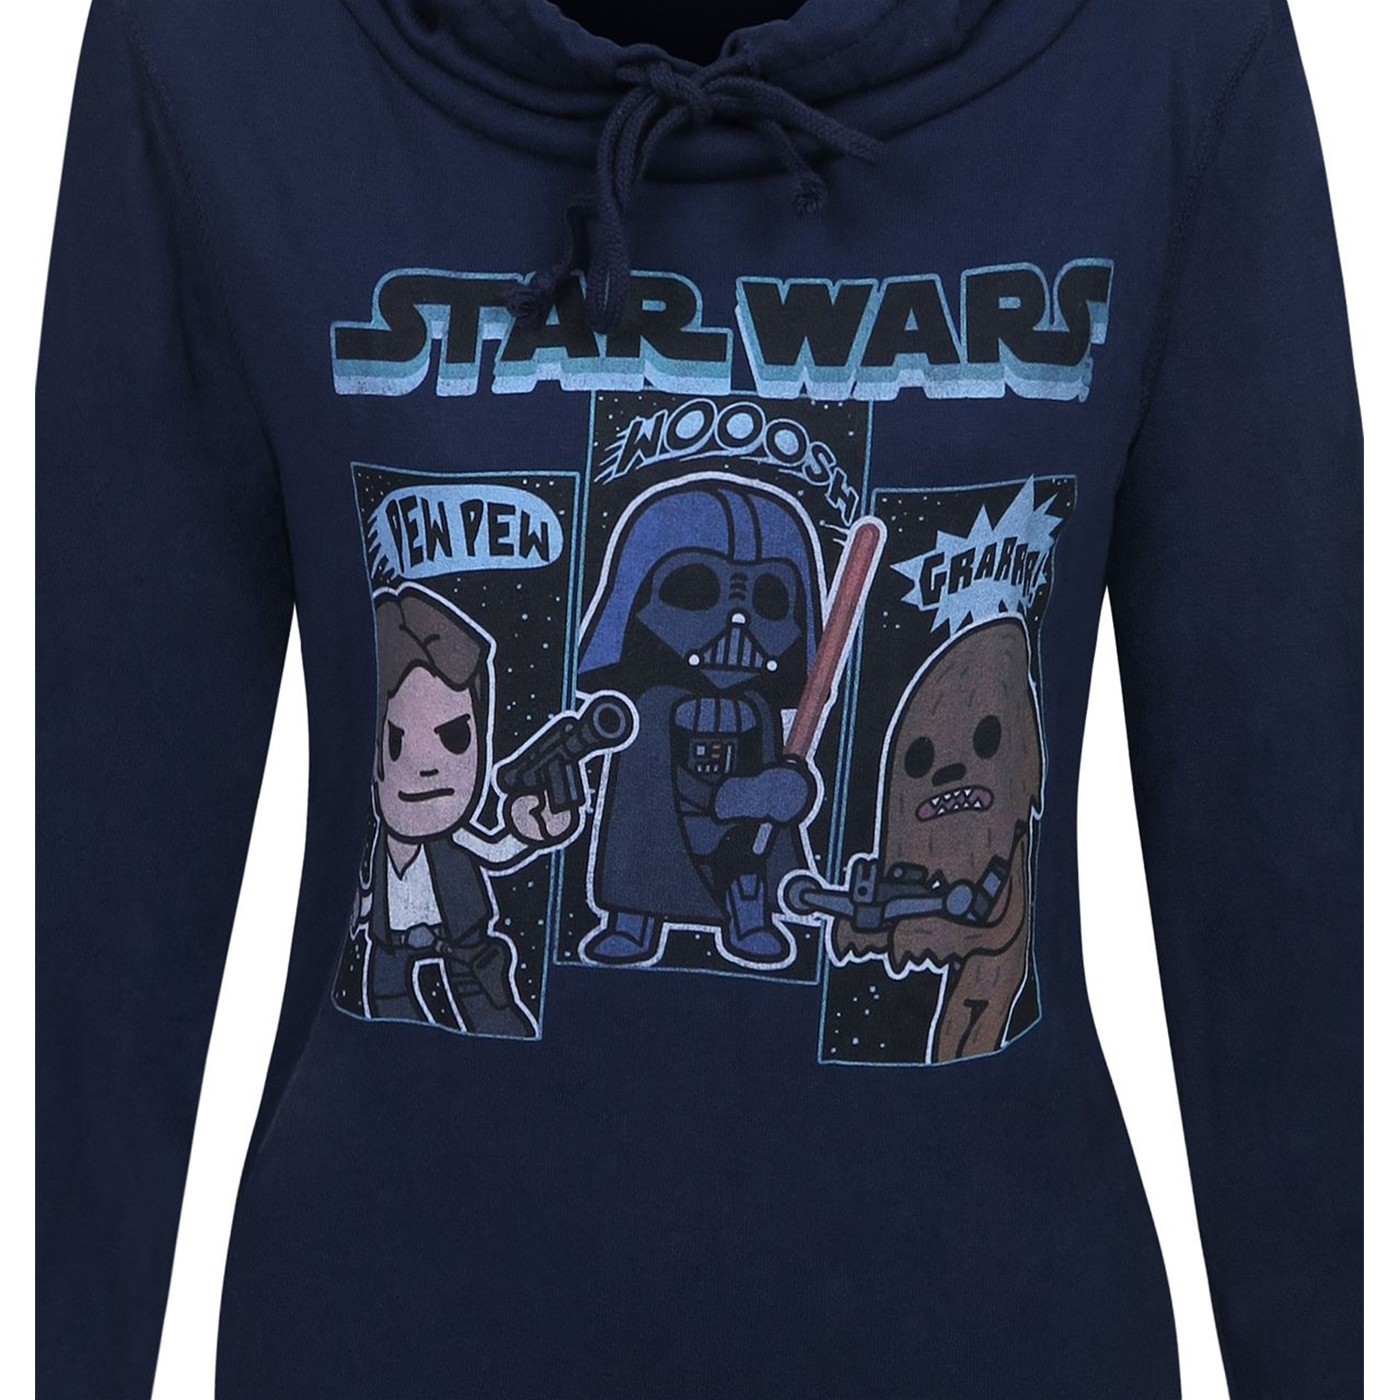 Star Wars Sound Effects Women's Cowl Sweatshirt